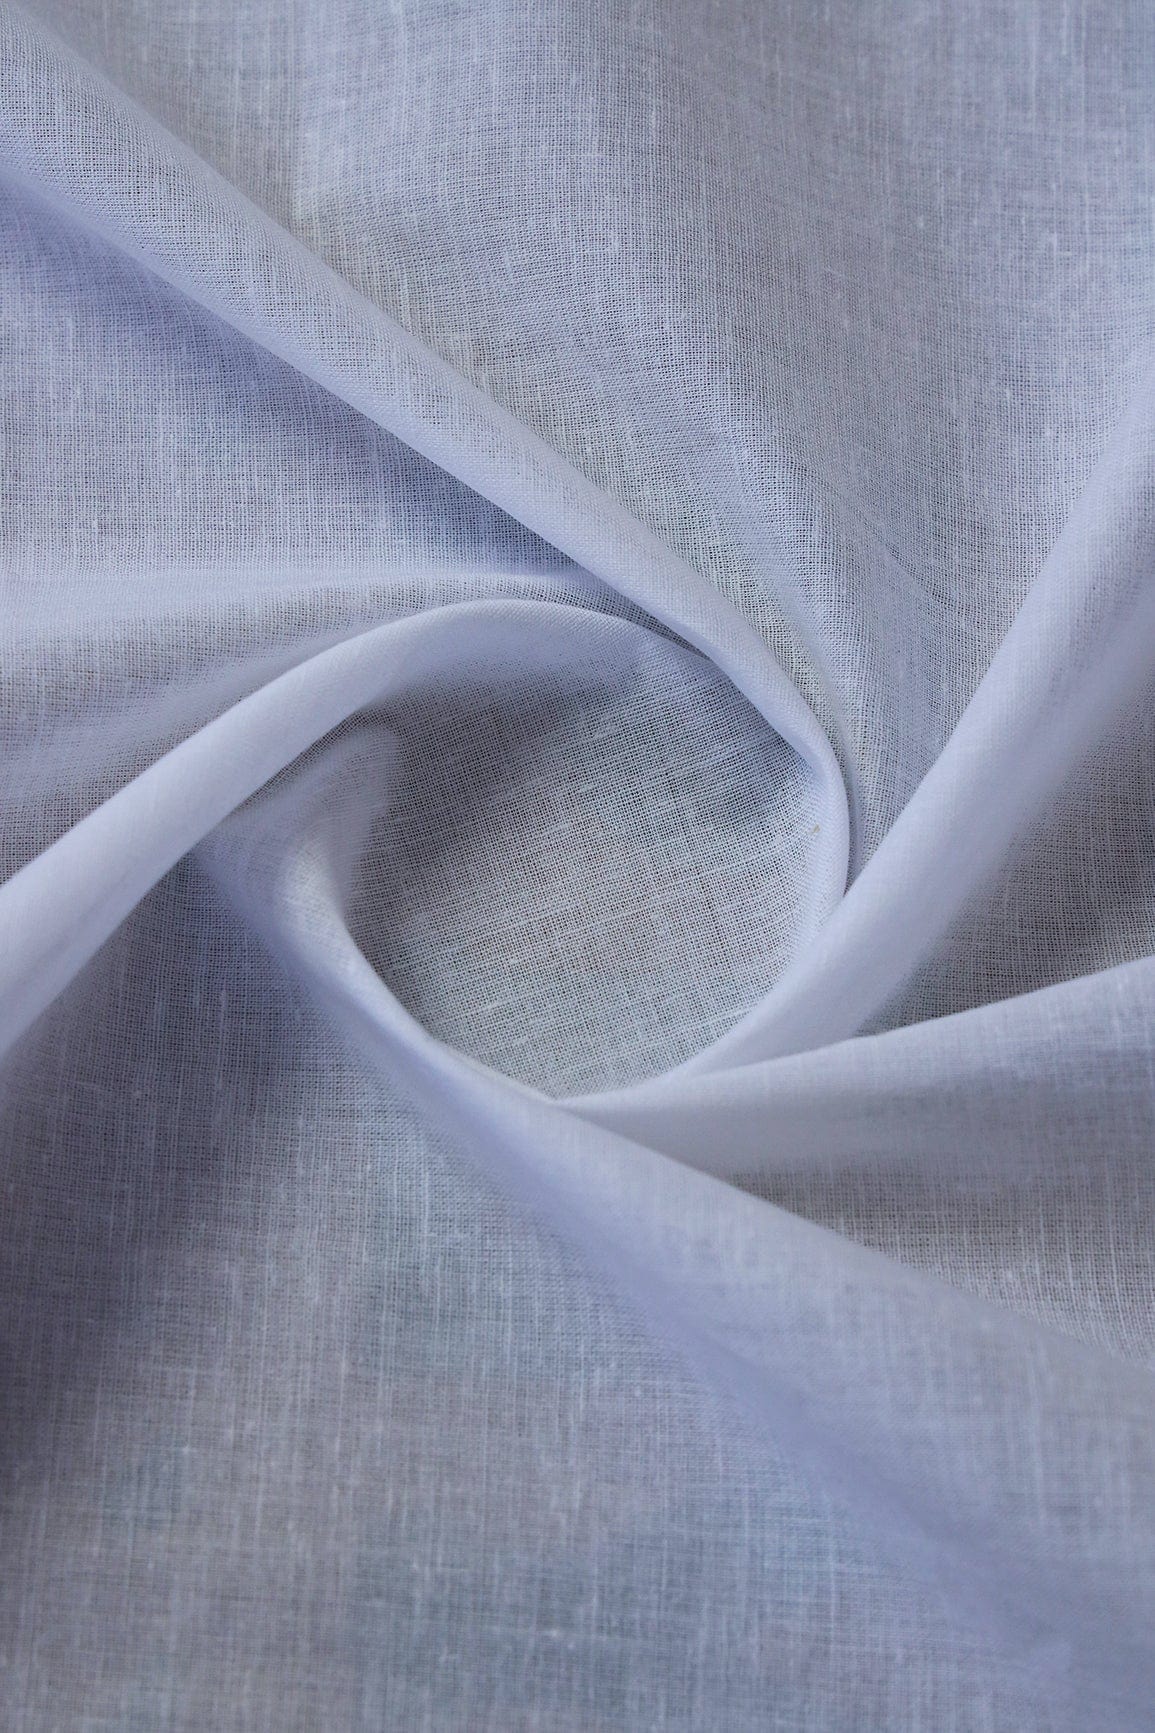 doeraa SUIT SETS Peach And White Pure Mul Cotton Unstitched Suit Set (2 Piece)